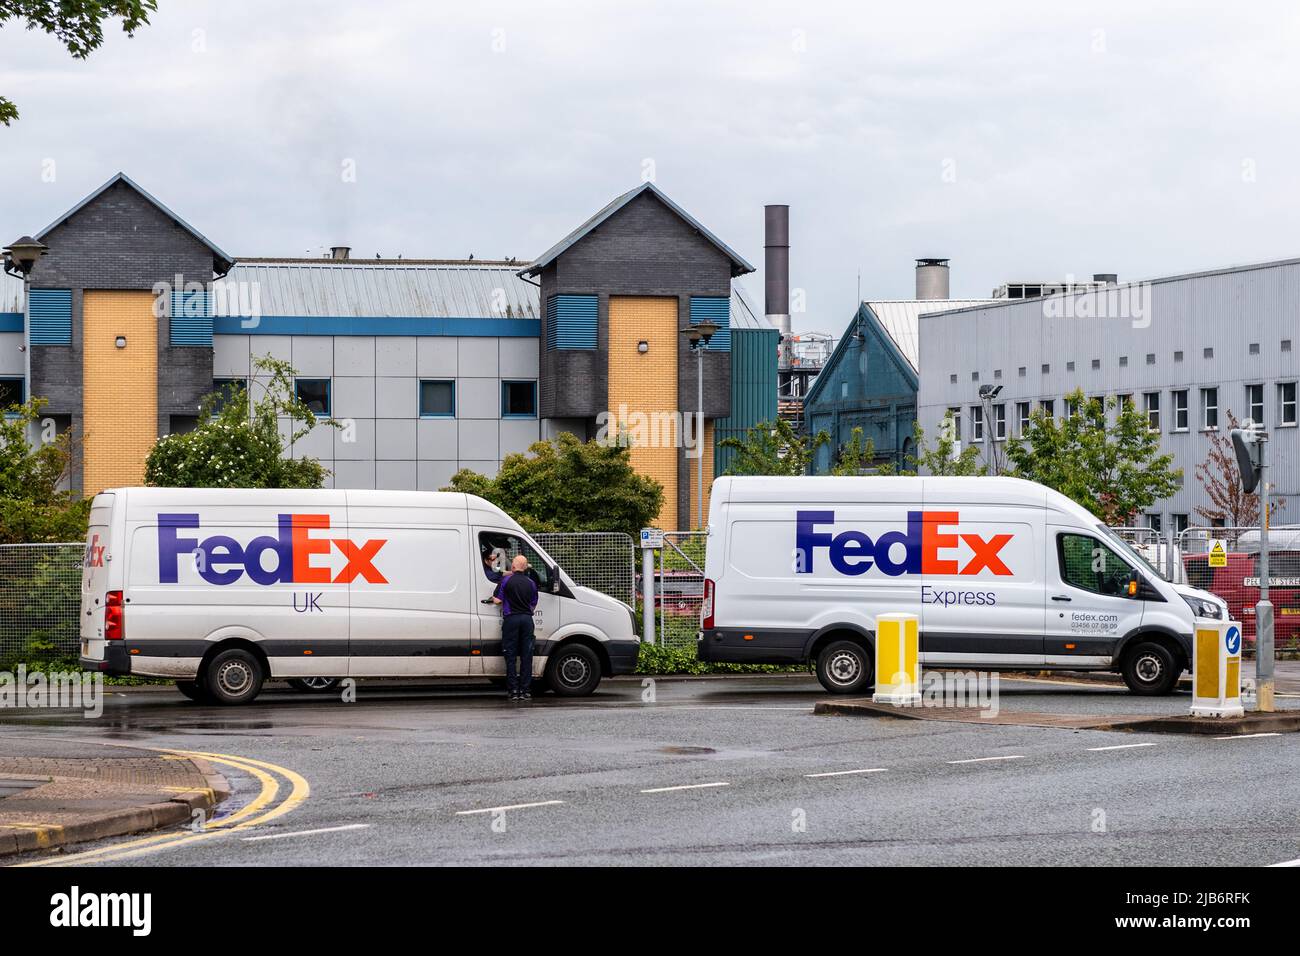 Deux fourgonnettes de livraison FedEx garées à Lincoln, Lincolnshire, Royaume-Uni. Banque D'Images